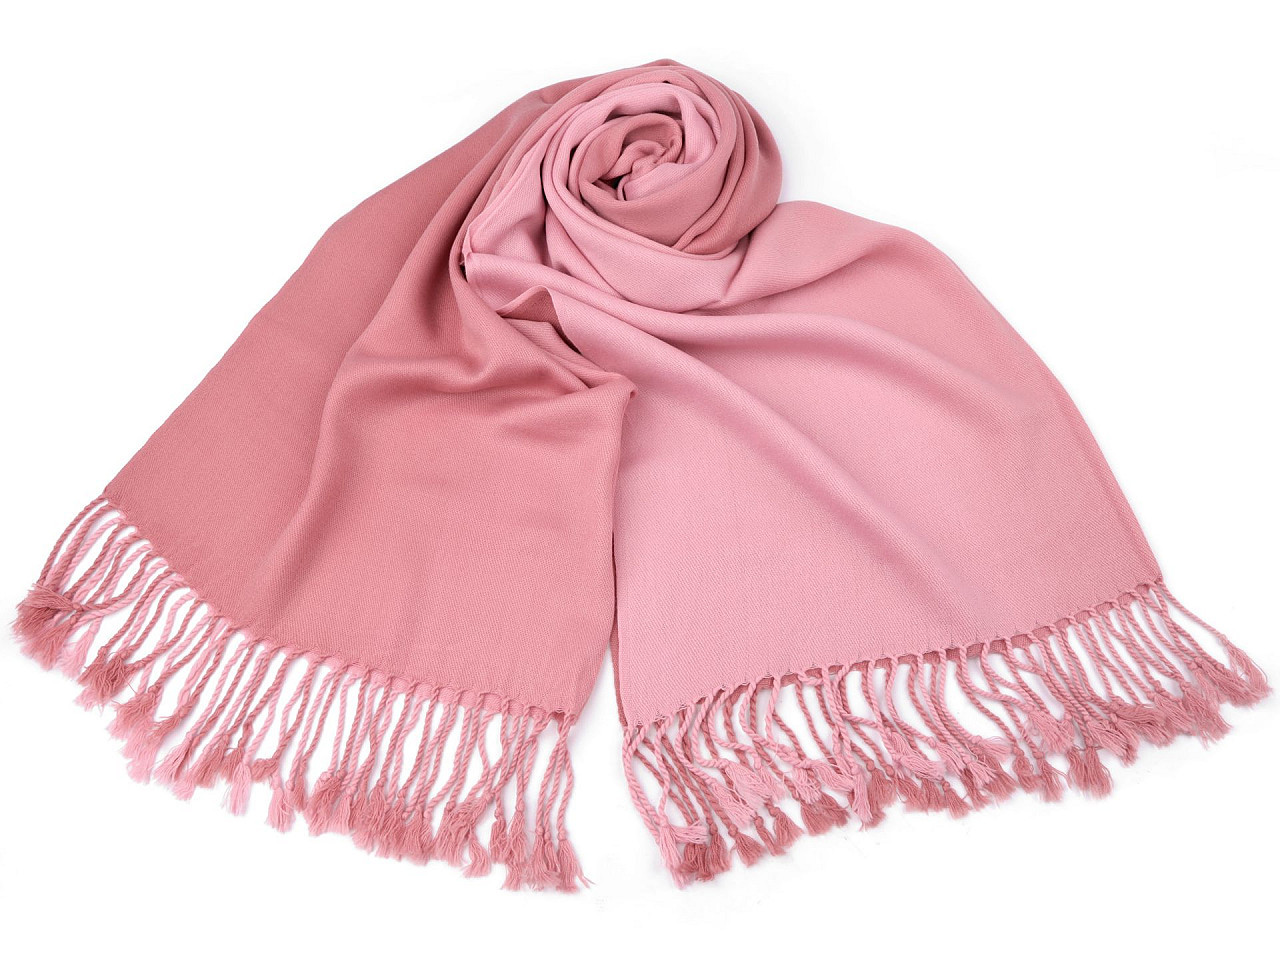 Šátek / šála ombré s třásněmi 65x180 cm, barva 15 starorůžová růžová světlá